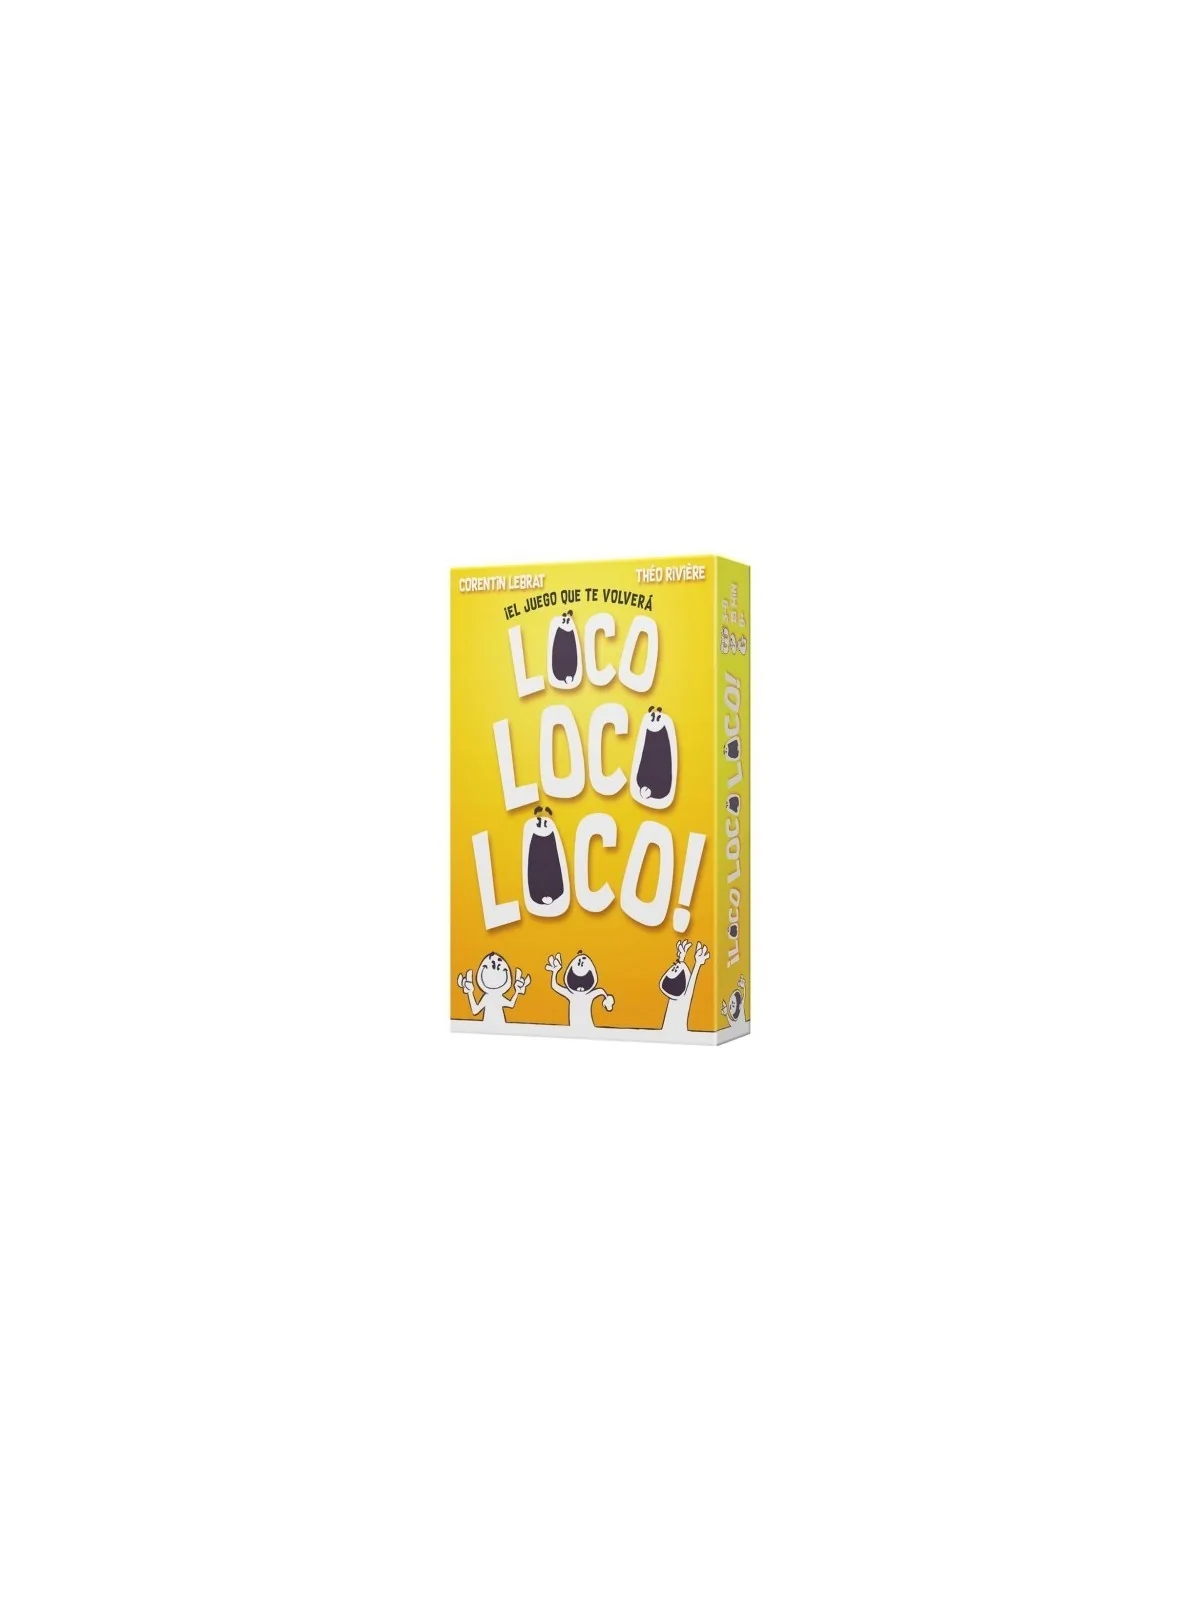 Comprar ¡Loco Loco Loco! barato al mejor precio 10,80 € de Asmodee